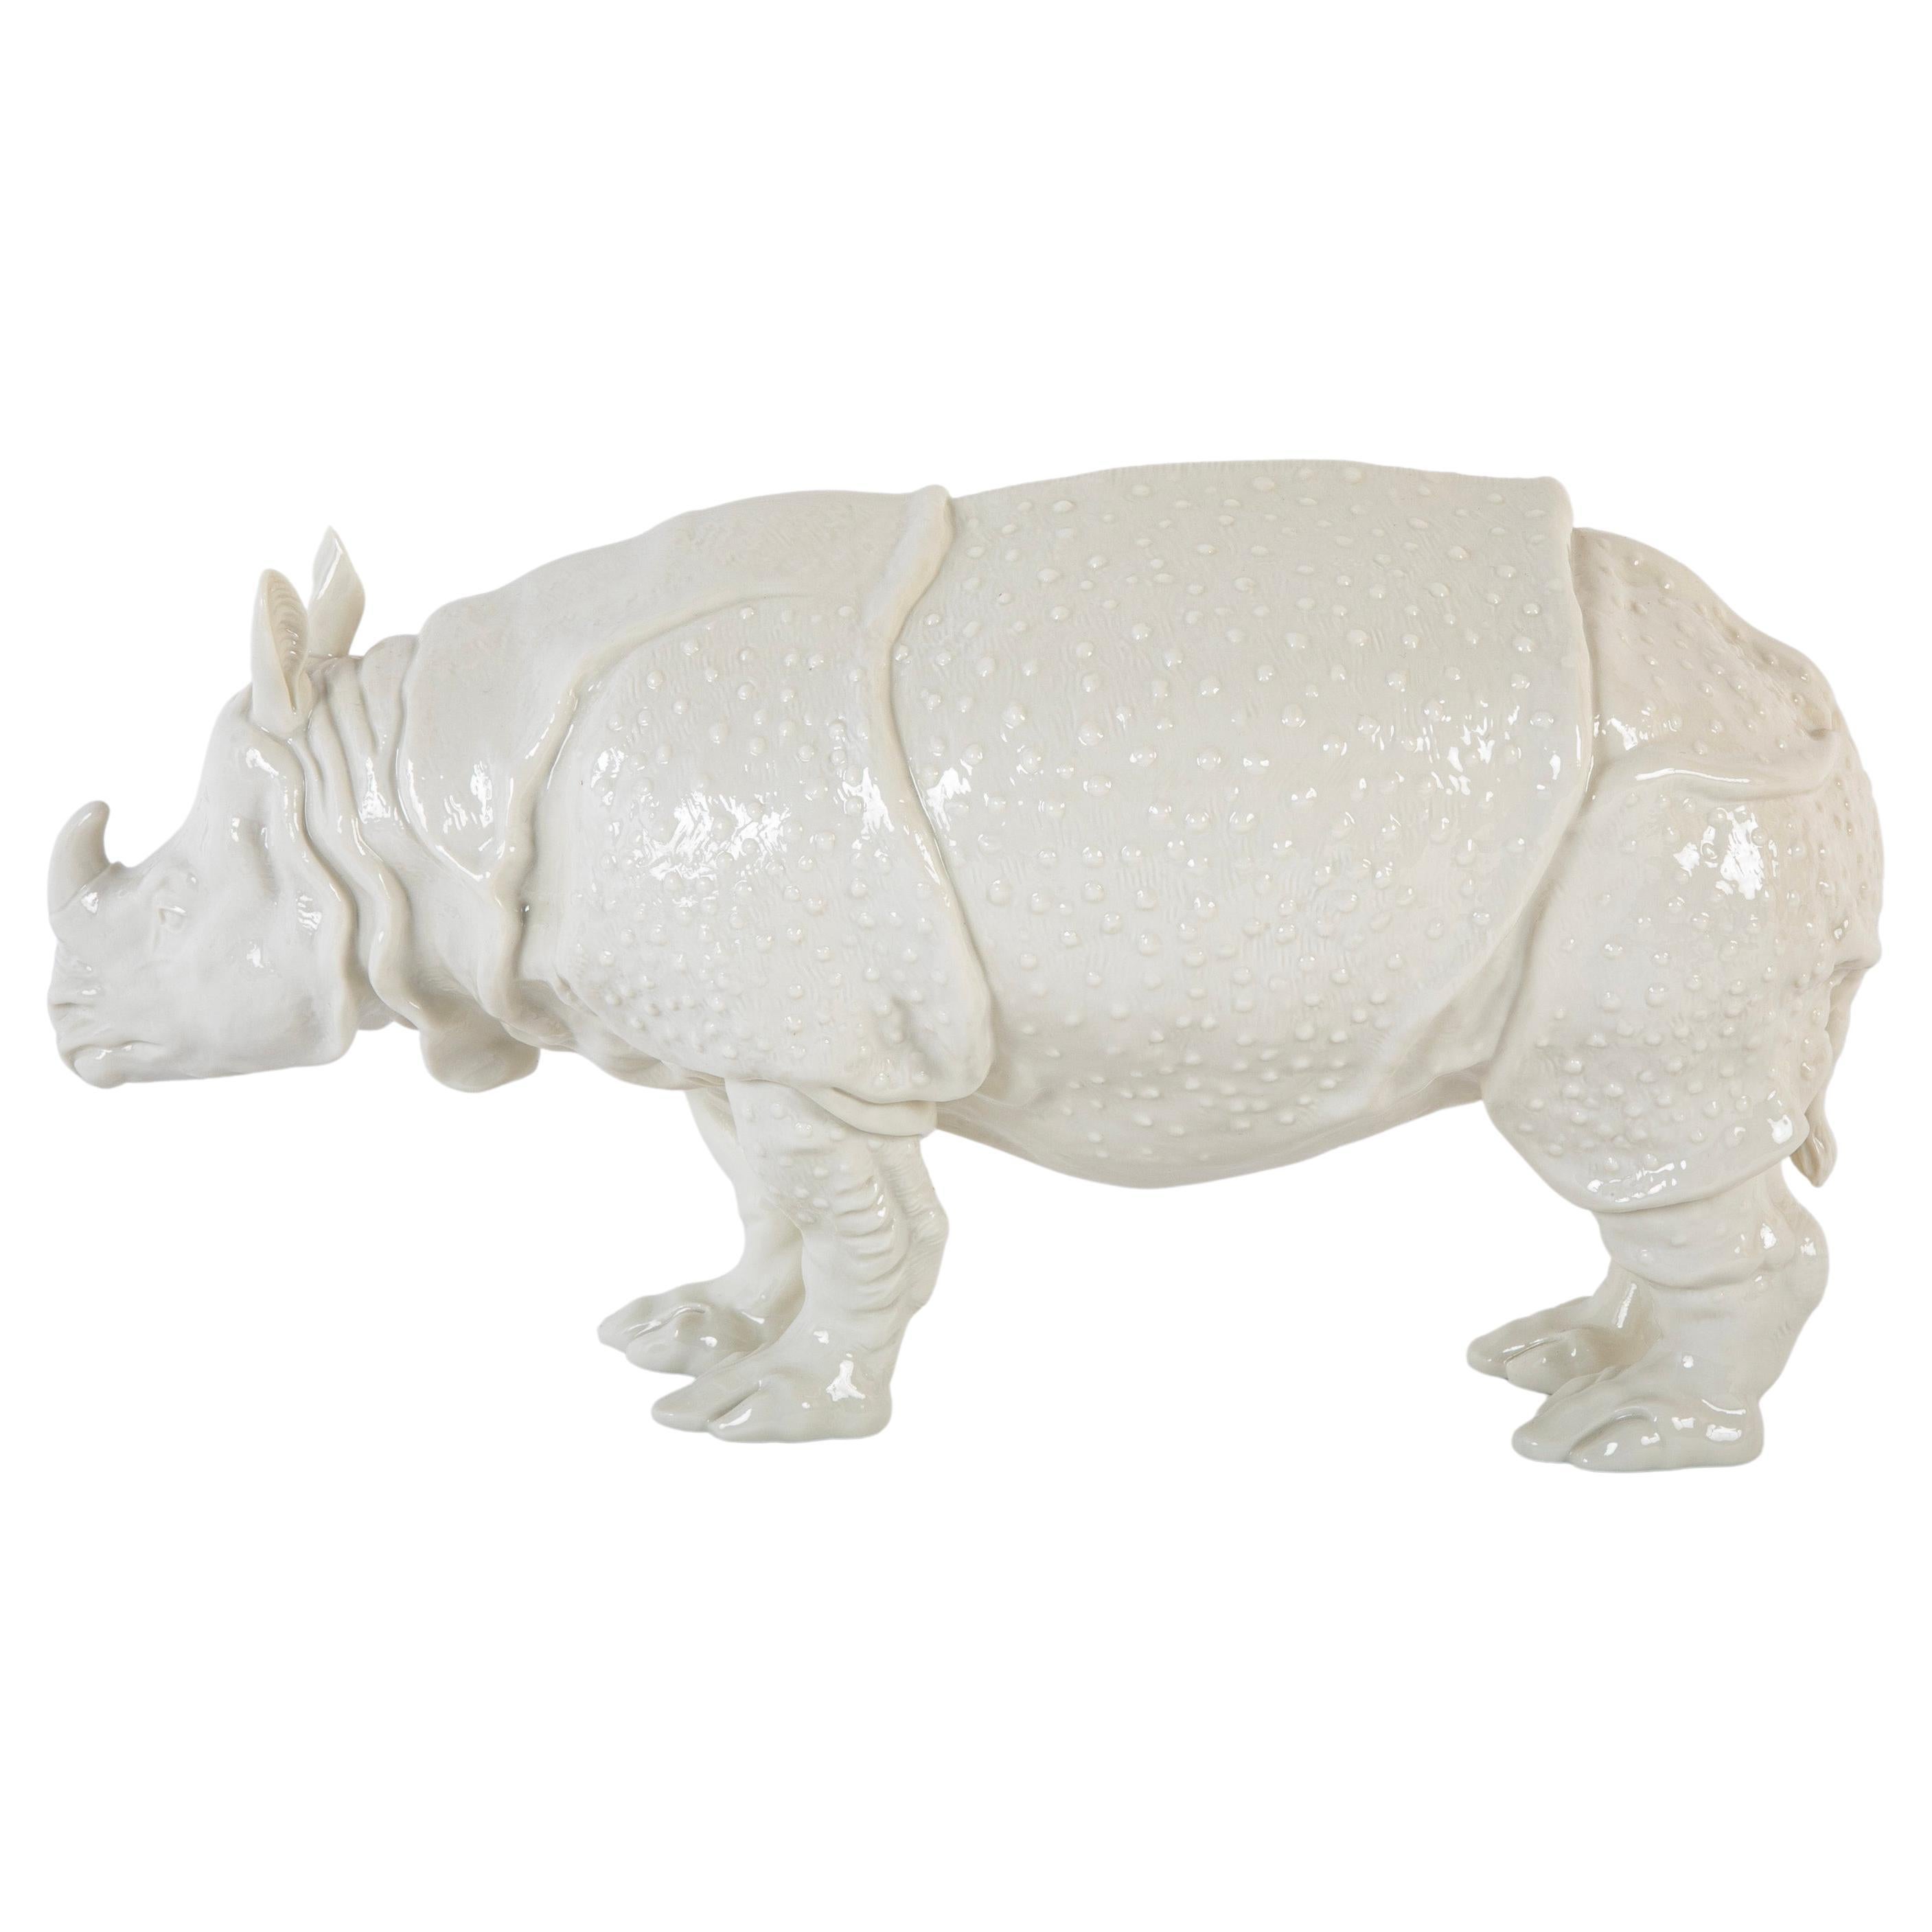 Rhino Clara Nymphenburg Frankenthaler Modell aus weiß glasiertem Porzellan, Rhino Clara Nymphenburg